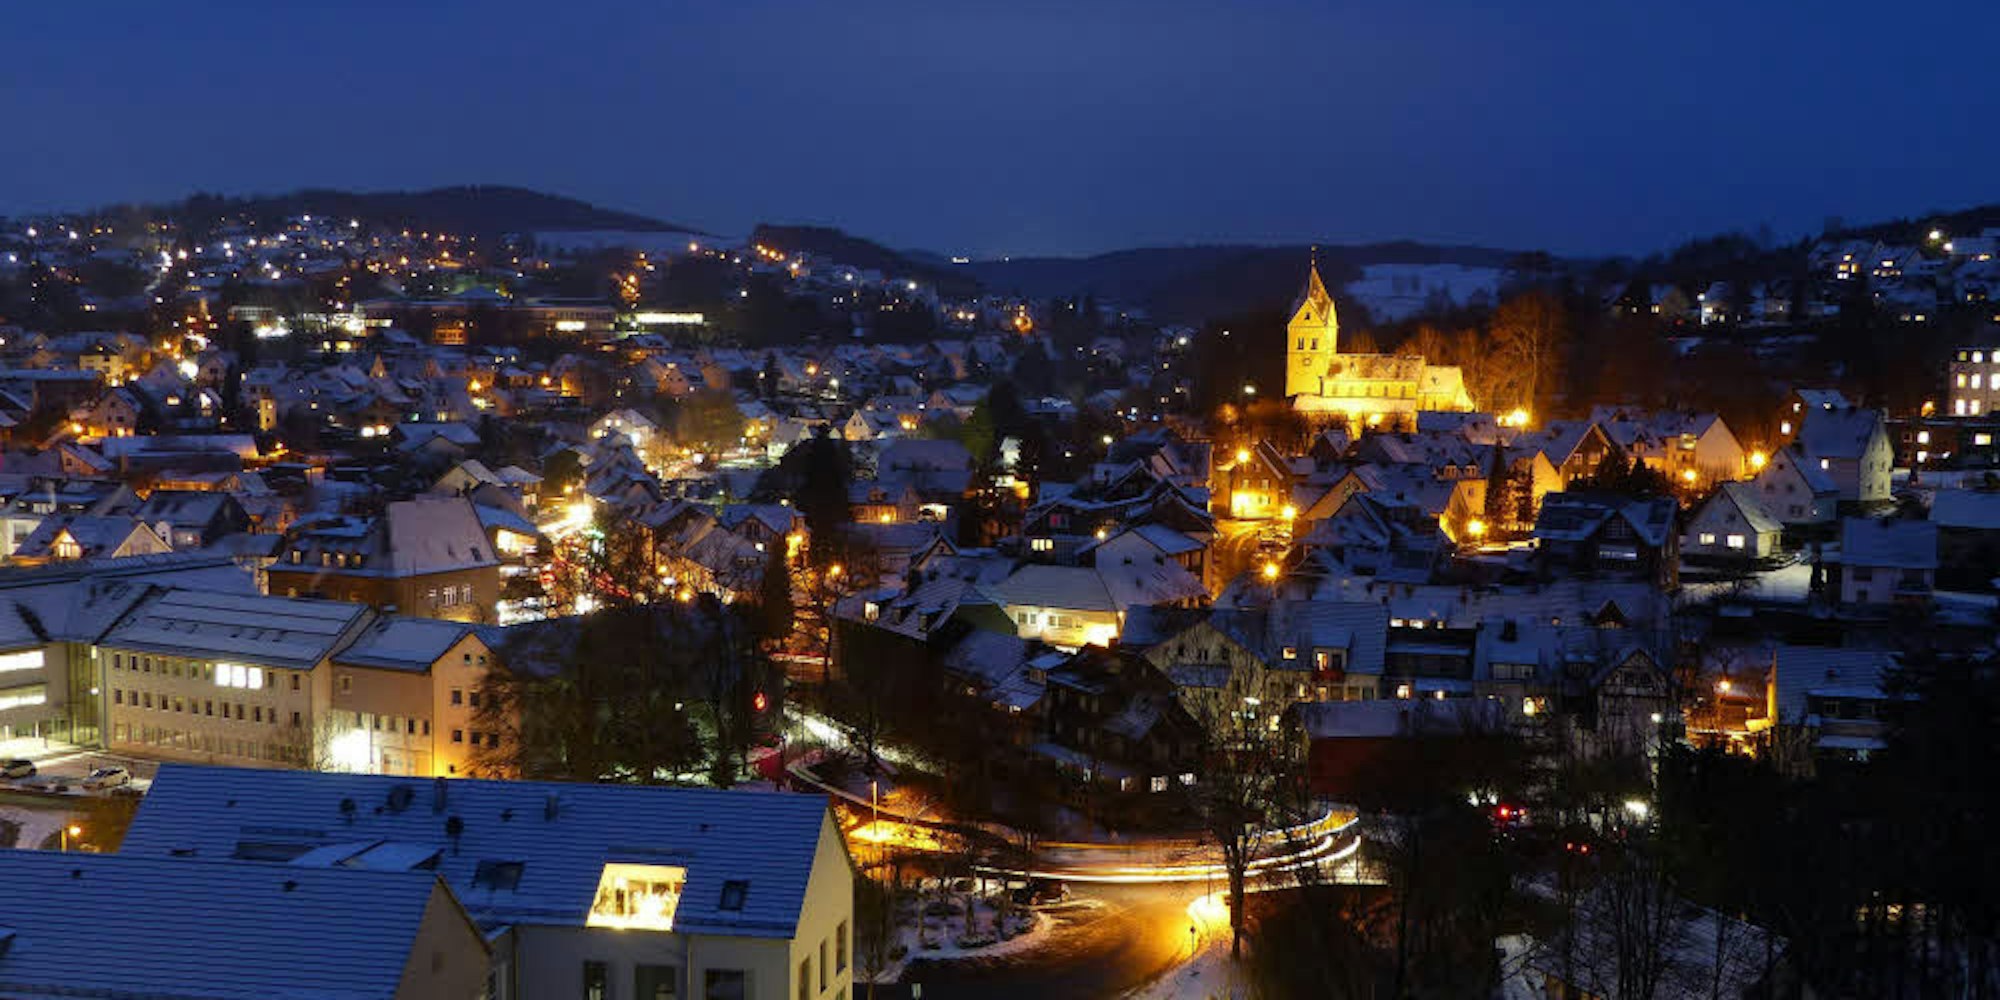 Winterlich und in einem besonderen Licht präsentiert sich gerade die Ortsmitte Morsbachs bei Nacht: Hier soll 2020 das historische Jubiläum der ersten urkundlichen Erwähnung gefeiert werden. Die Vorbereitungen dafür laufen seit einem Jahr.